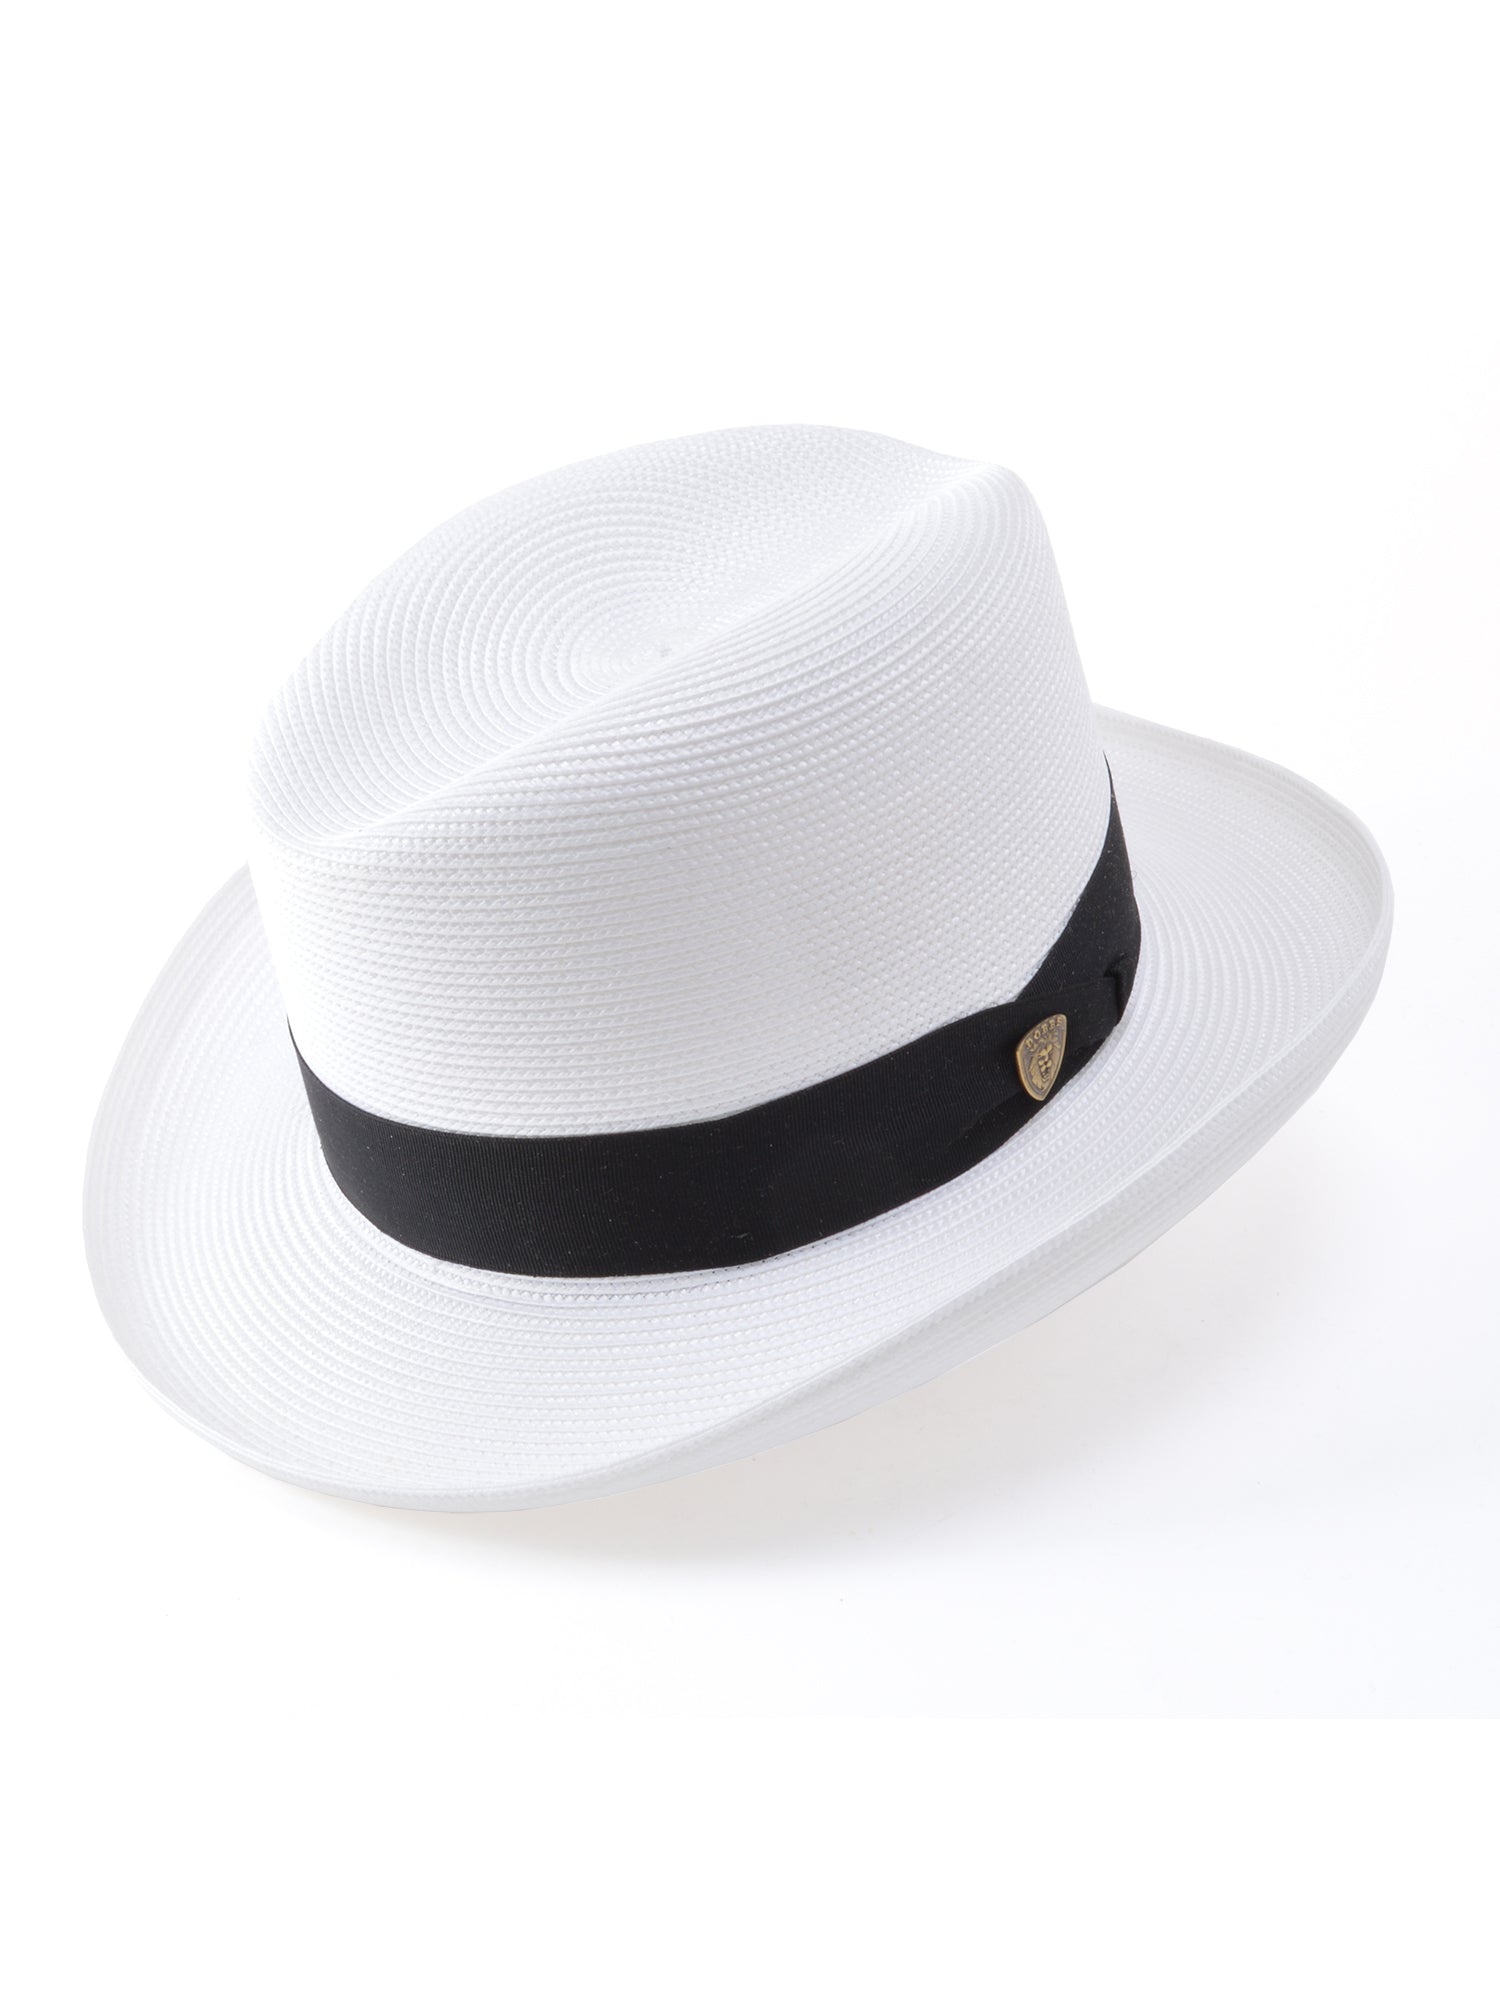 Dobbs El Dorado Florentine Milan Straw Hat